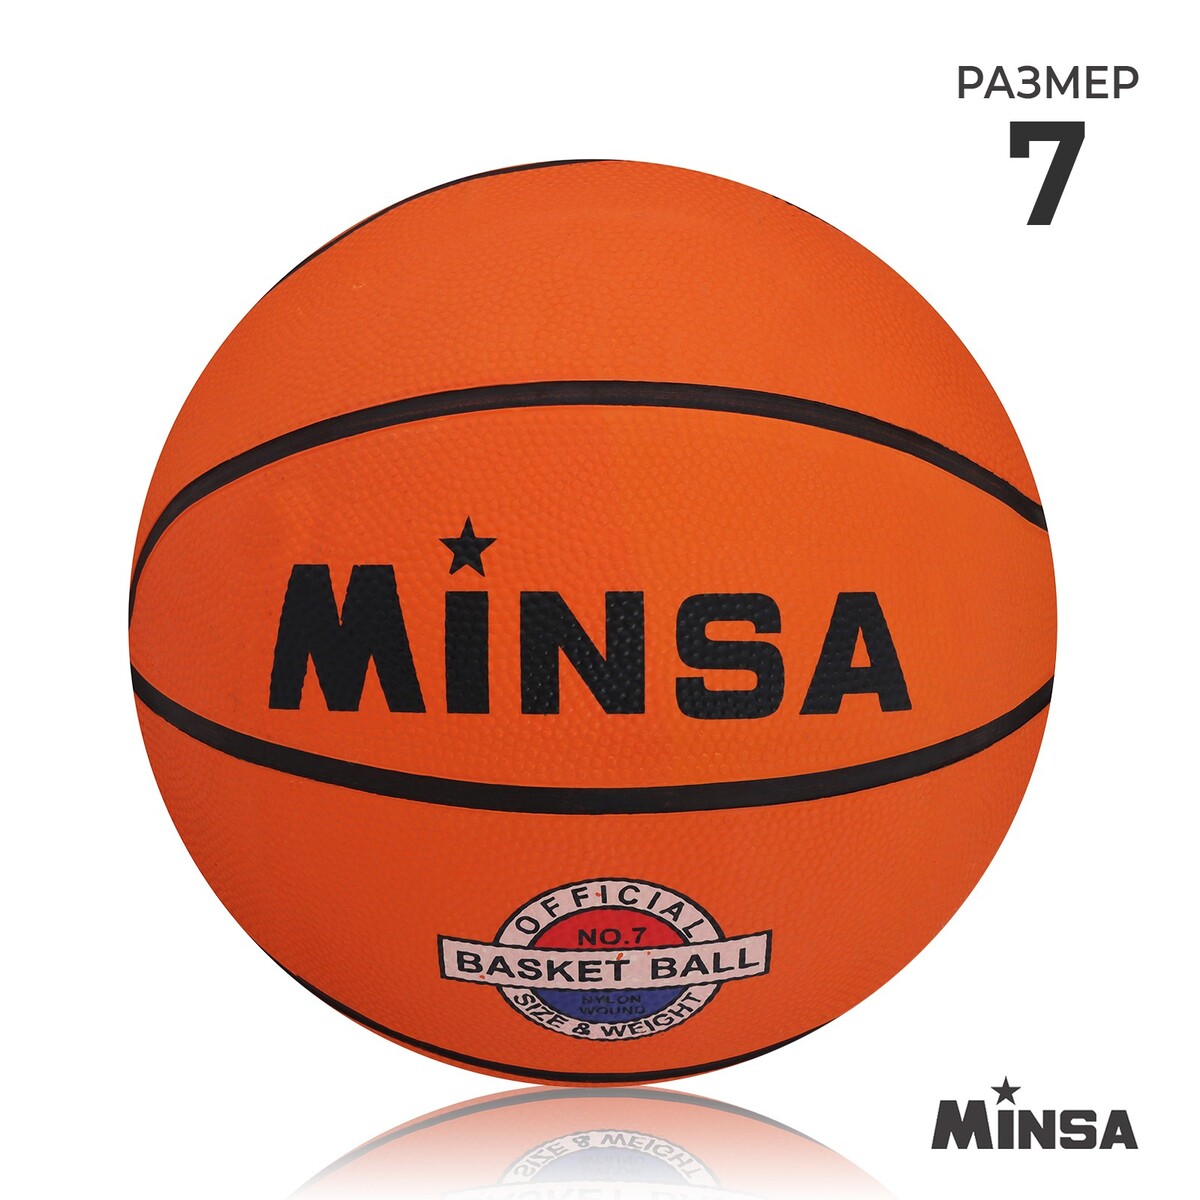 Мяч баскетбольный minsa, пвх, клееный, 8 панелей, р. 7 баскетбольный мяч minsa тренировочный pu клееный 8 панелей р 6